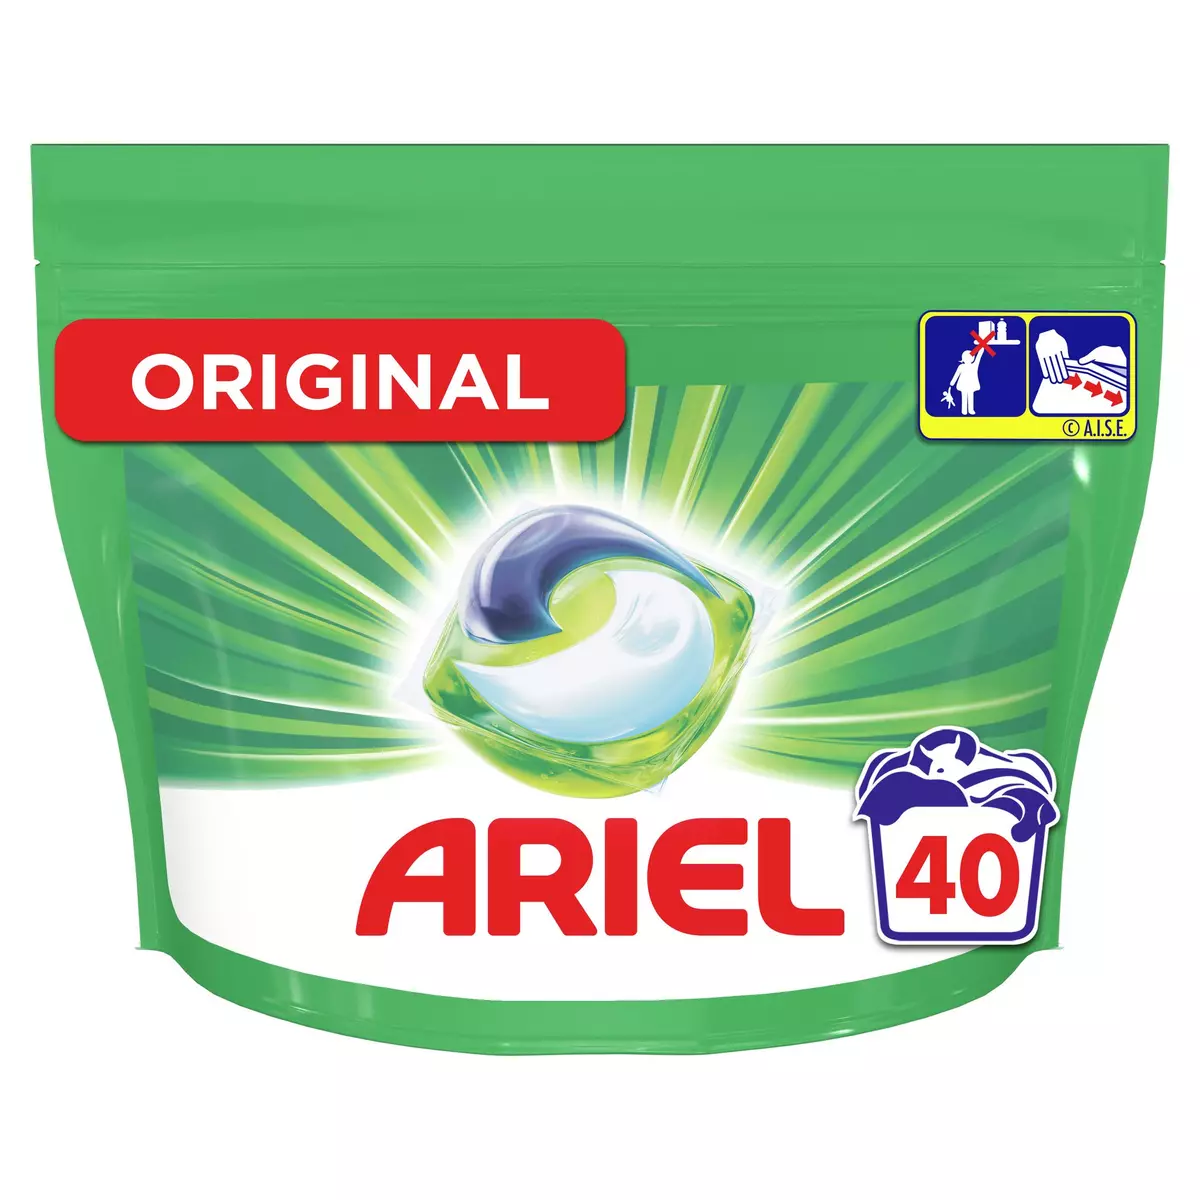 ARIEL Pods capsules de lessive tout en 1 original 40 capsules pas cher 